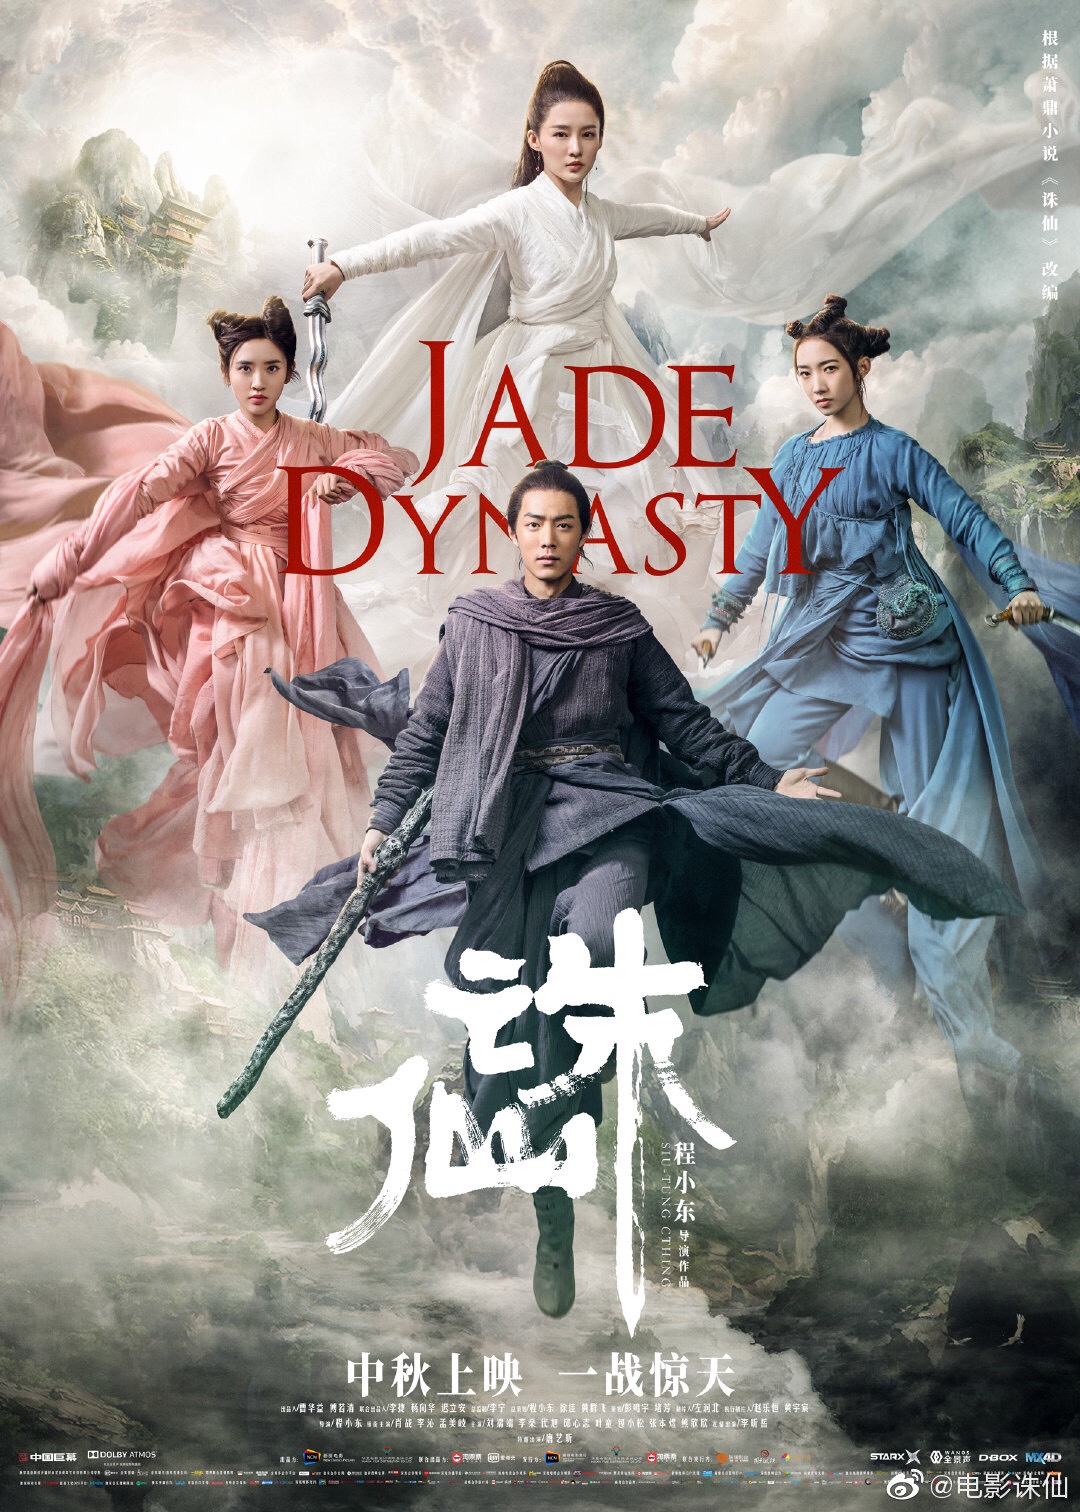 ดูหนังออนไลน์ Jade Dynasty 2019 กระบี่เทพสังหาร ดูหนังชนโรง